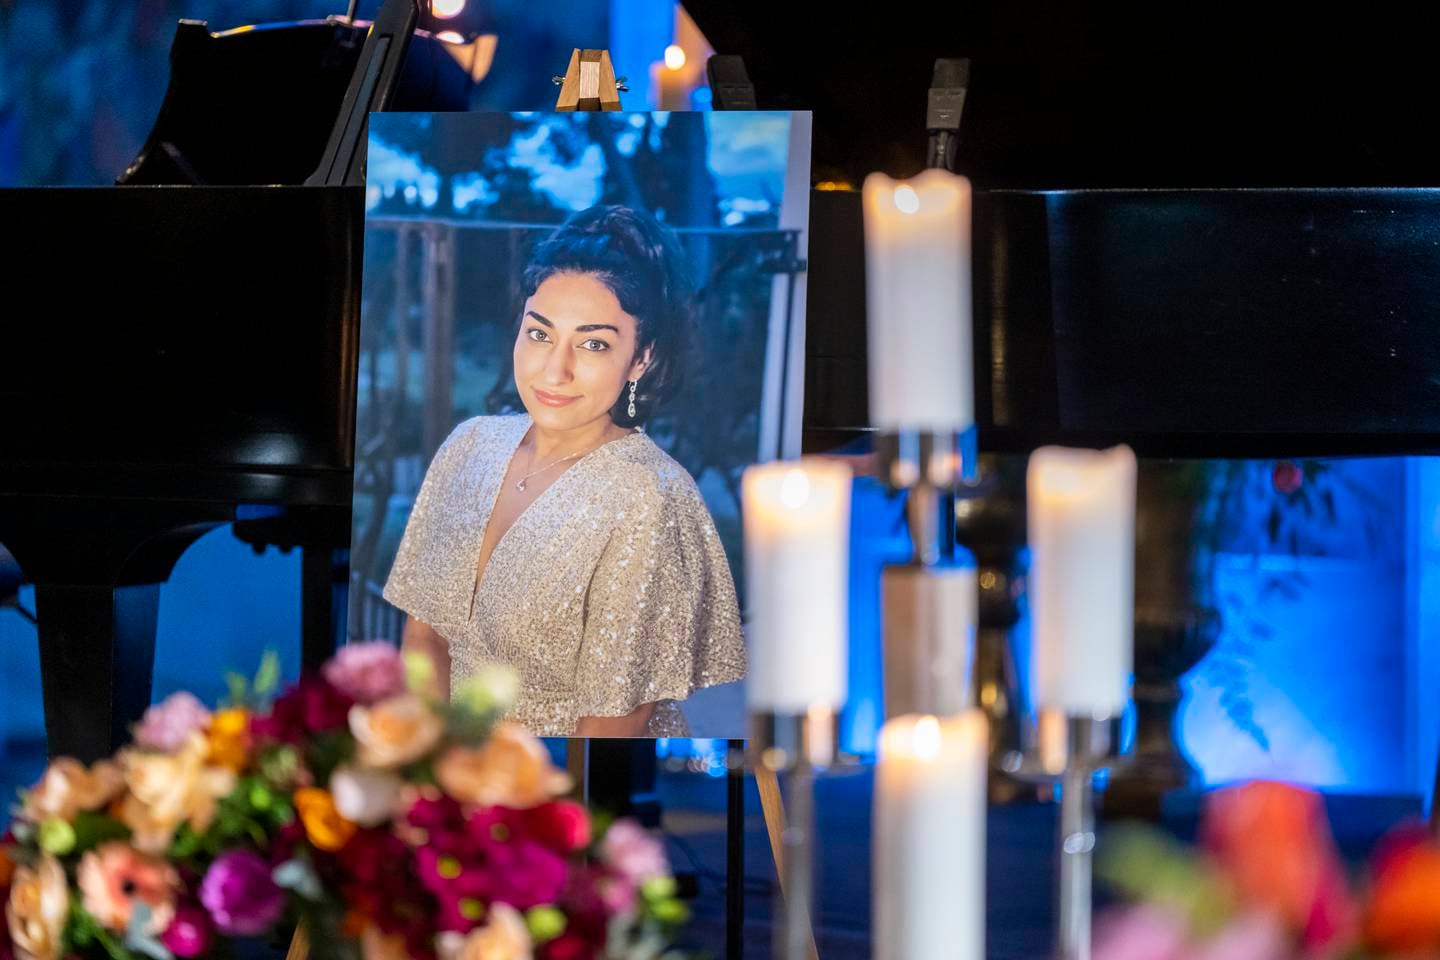 Shabana Rehman begraves fra Oslo rådhus tirsdag i en humanistisk seremoni. Regjeringen besluttet å hedre samfunnsdebattanten, frihetsforkjemperen og komikeren Shabana Rehman med gravferd på statens bekostning. Foto: Heiko Junge / NTB